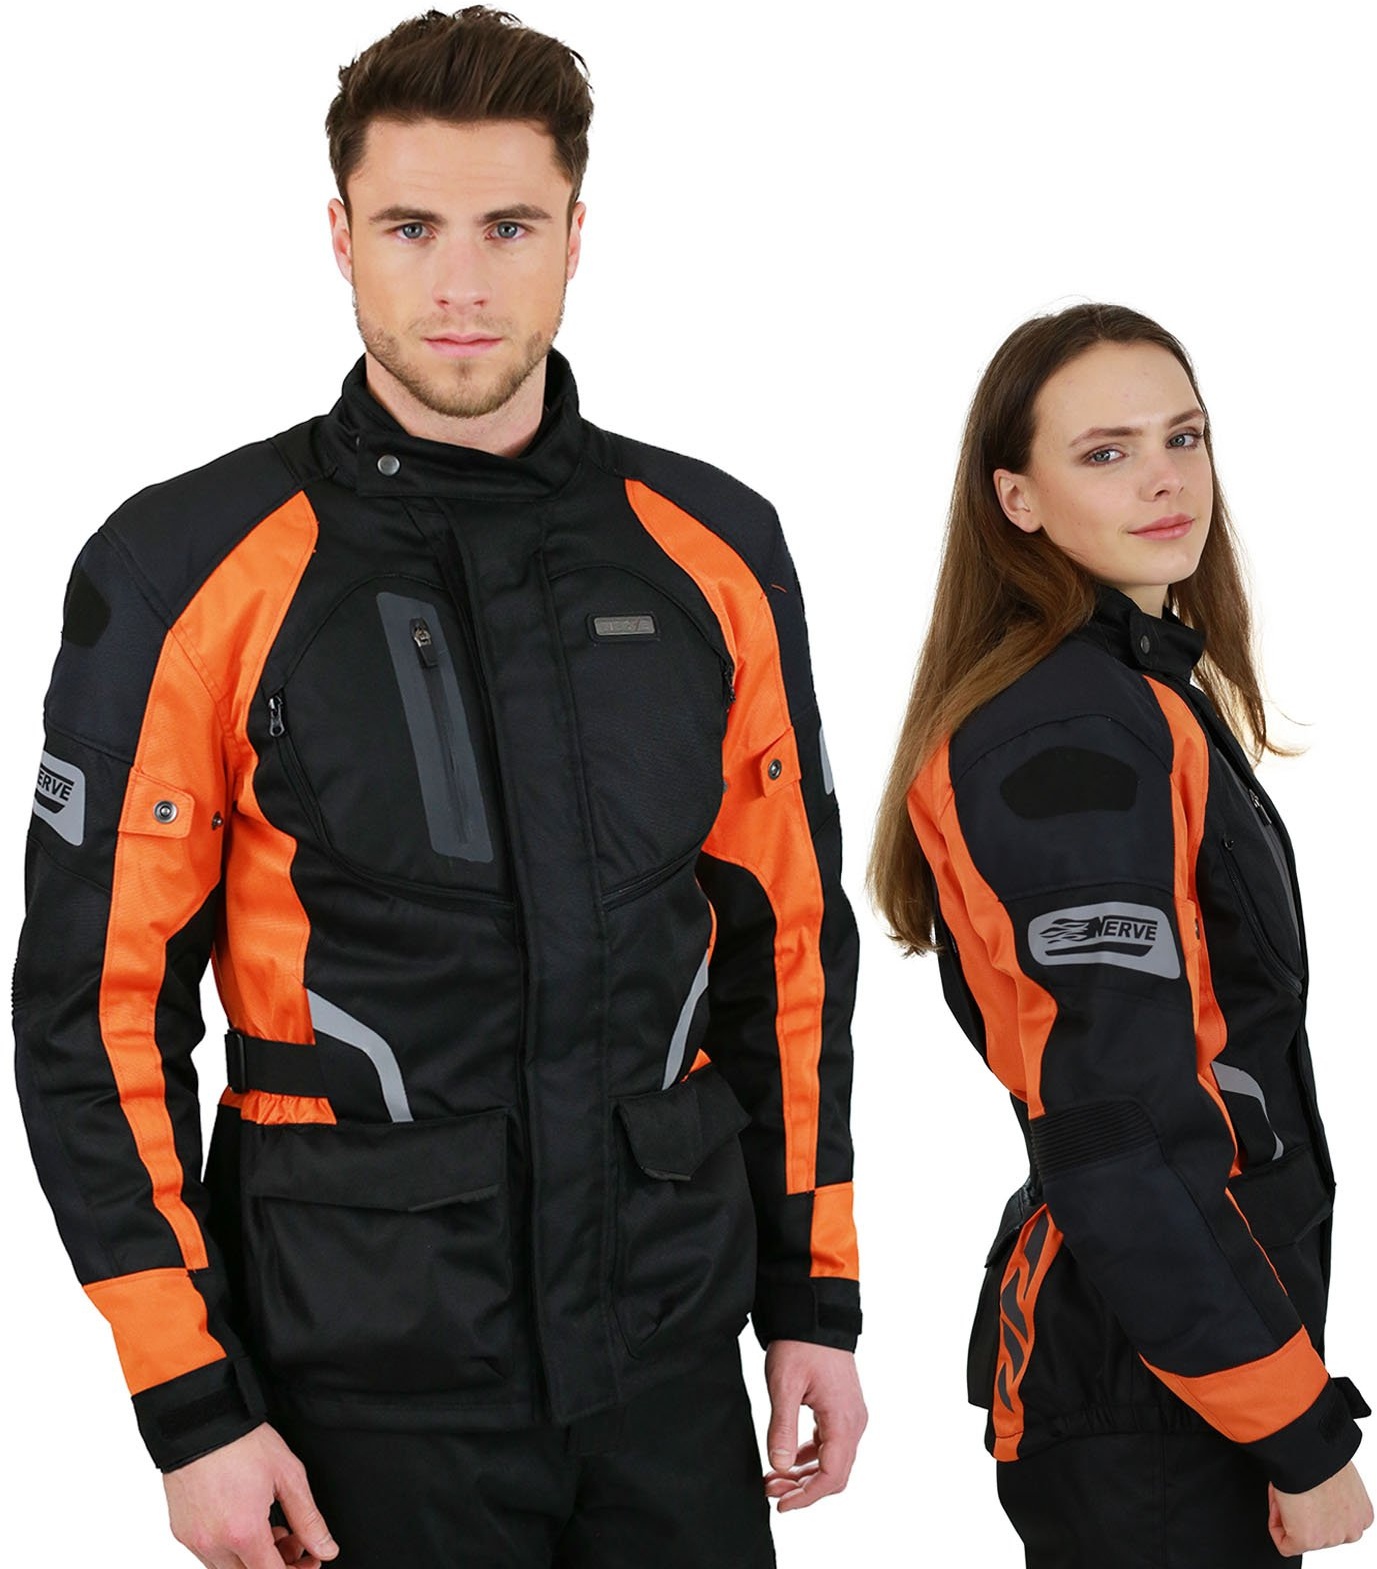 Motorradjacke -Spark- Sommer Winter Motorrad Roller Jacke Protektorenjacke Textil Herren Wasserdicht mit Protektoren - Schwarz-Neon-Orange - 2XL / XXL